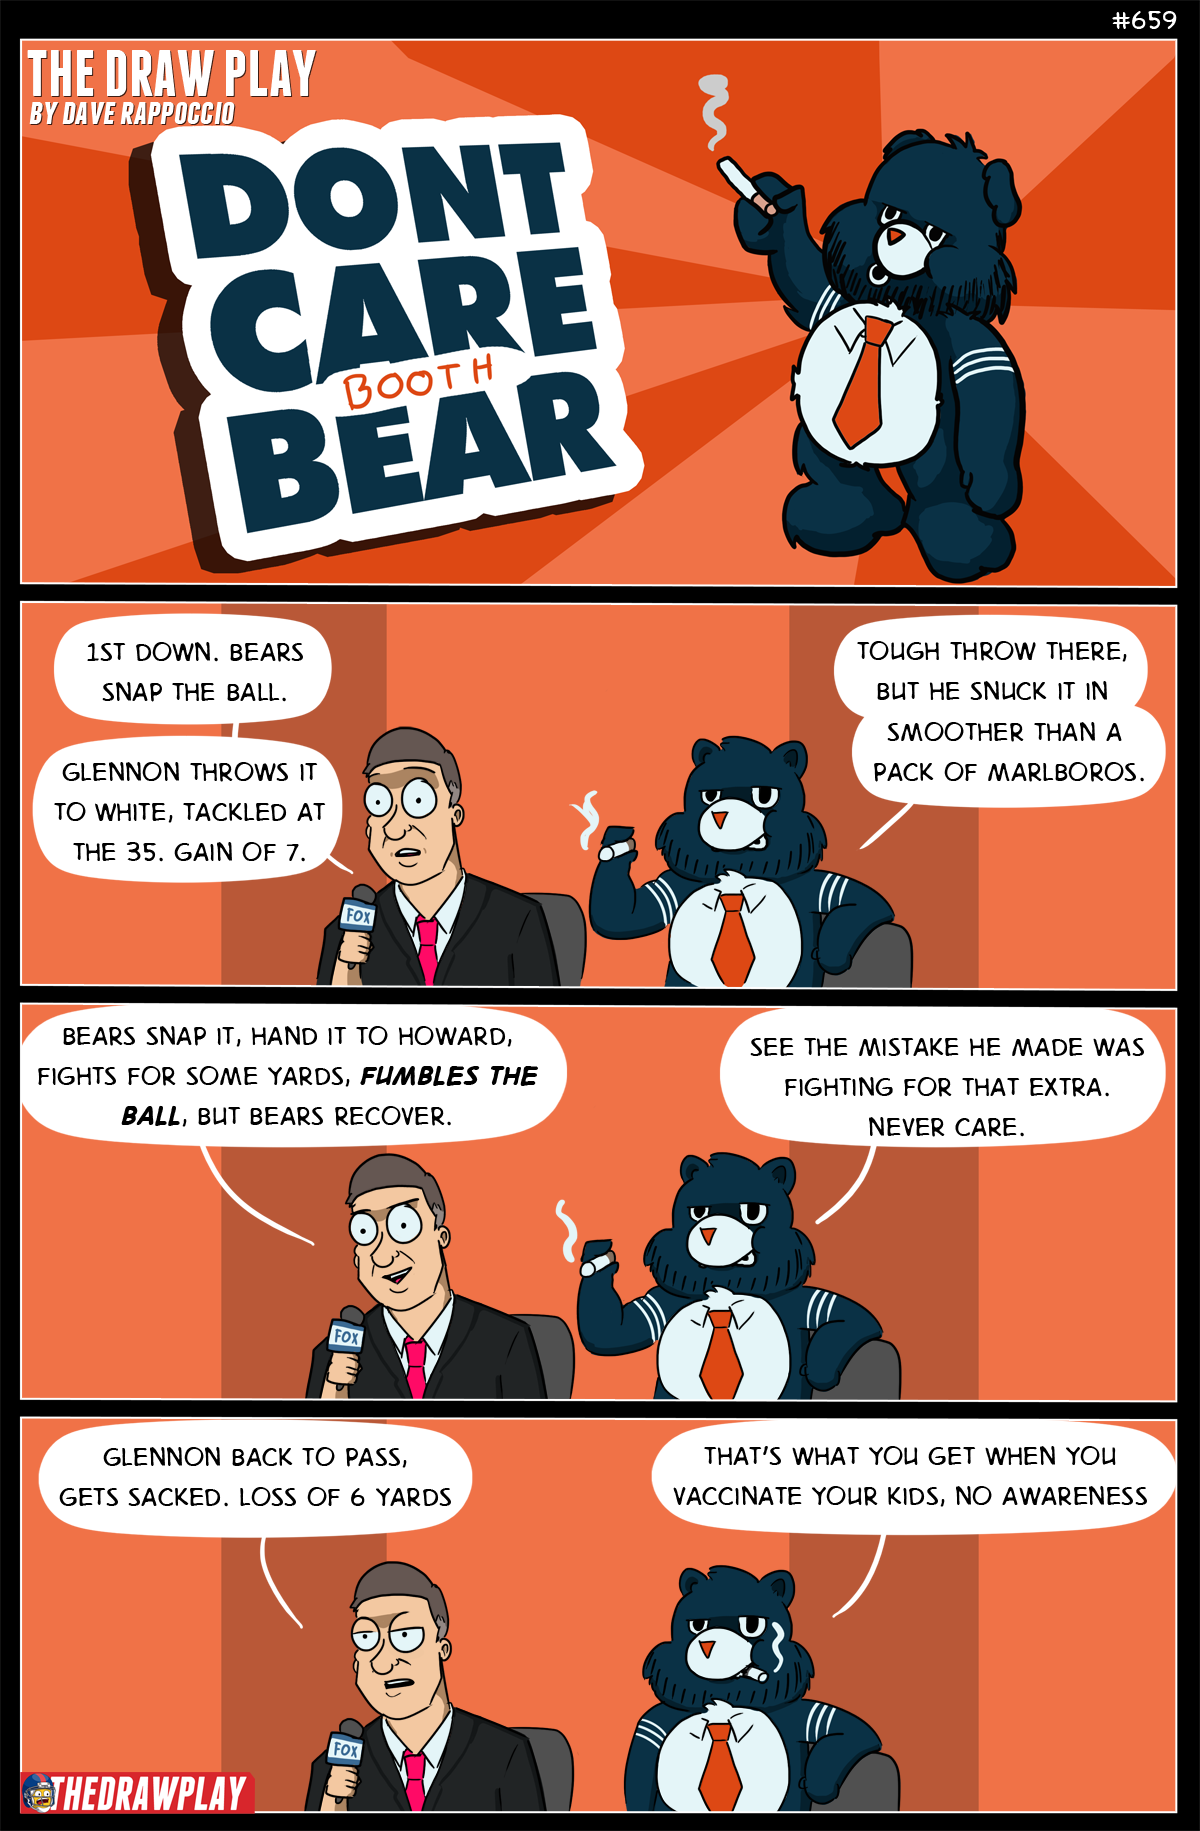 Jay Cutler to the Bears: Haha